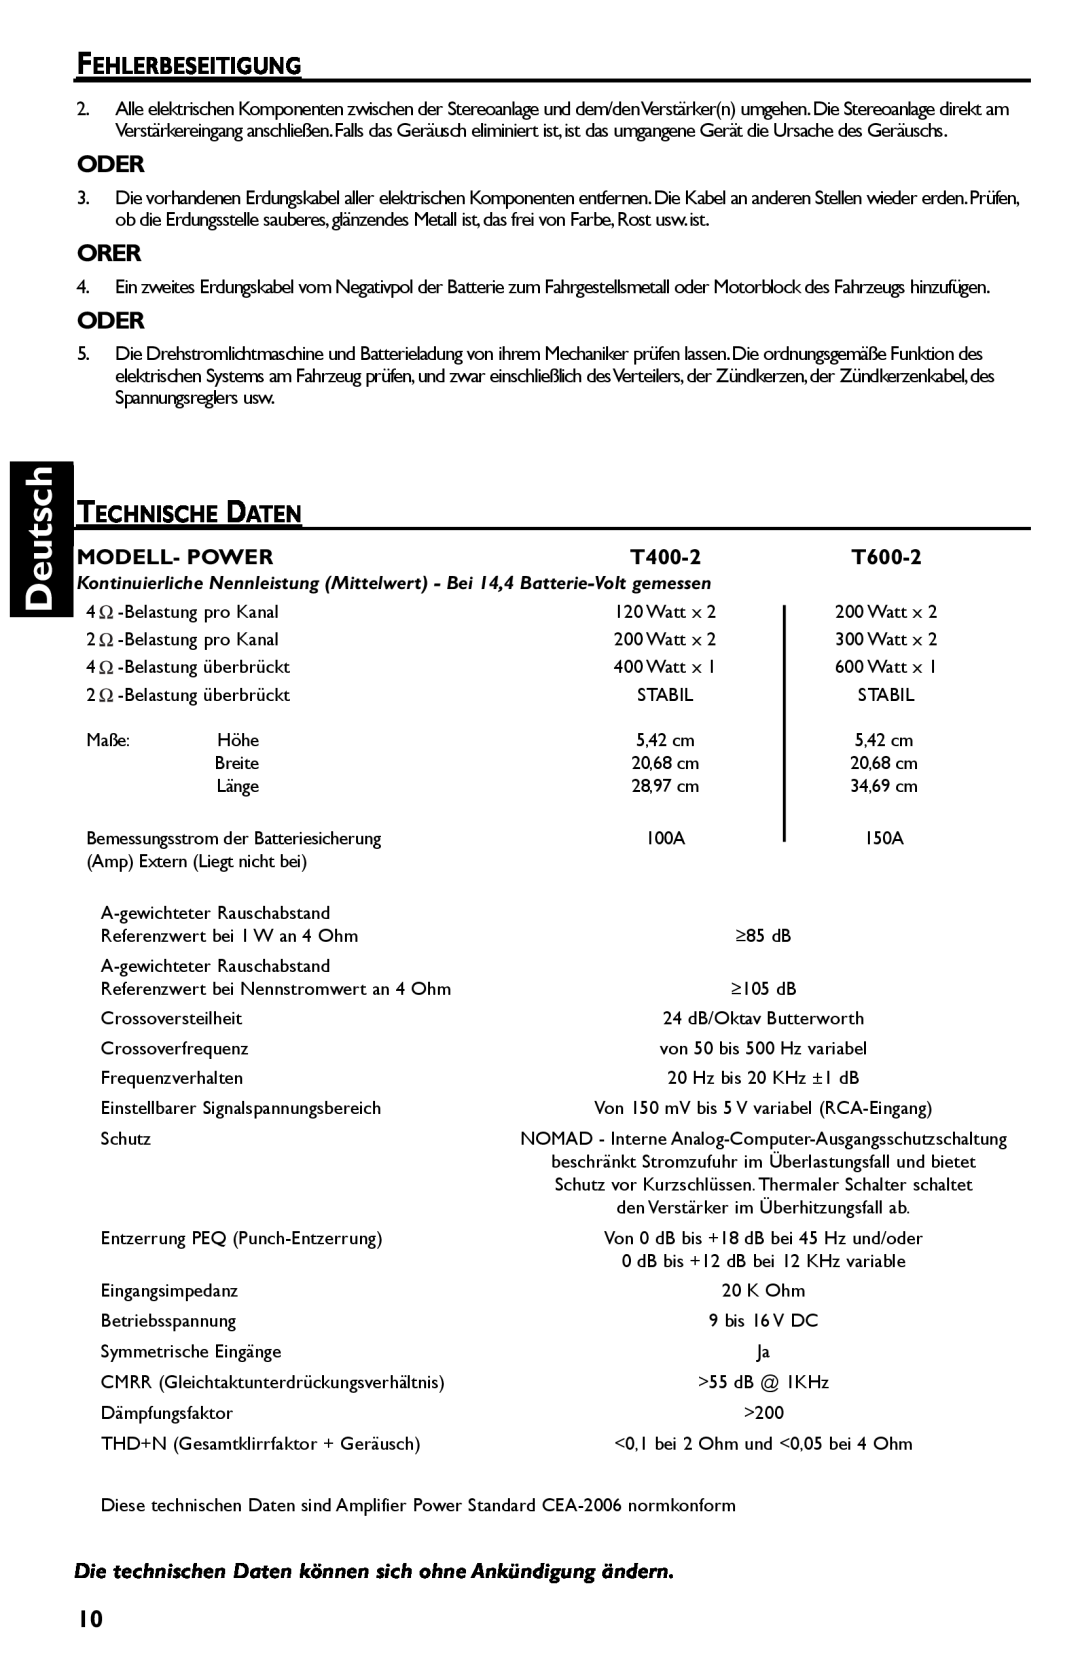 Rockford Fosgate T600-2 manual Deutsch, Fehlerbeseitigung, Oder, Orer, Technische Daten, Modell- Power, T400-2 